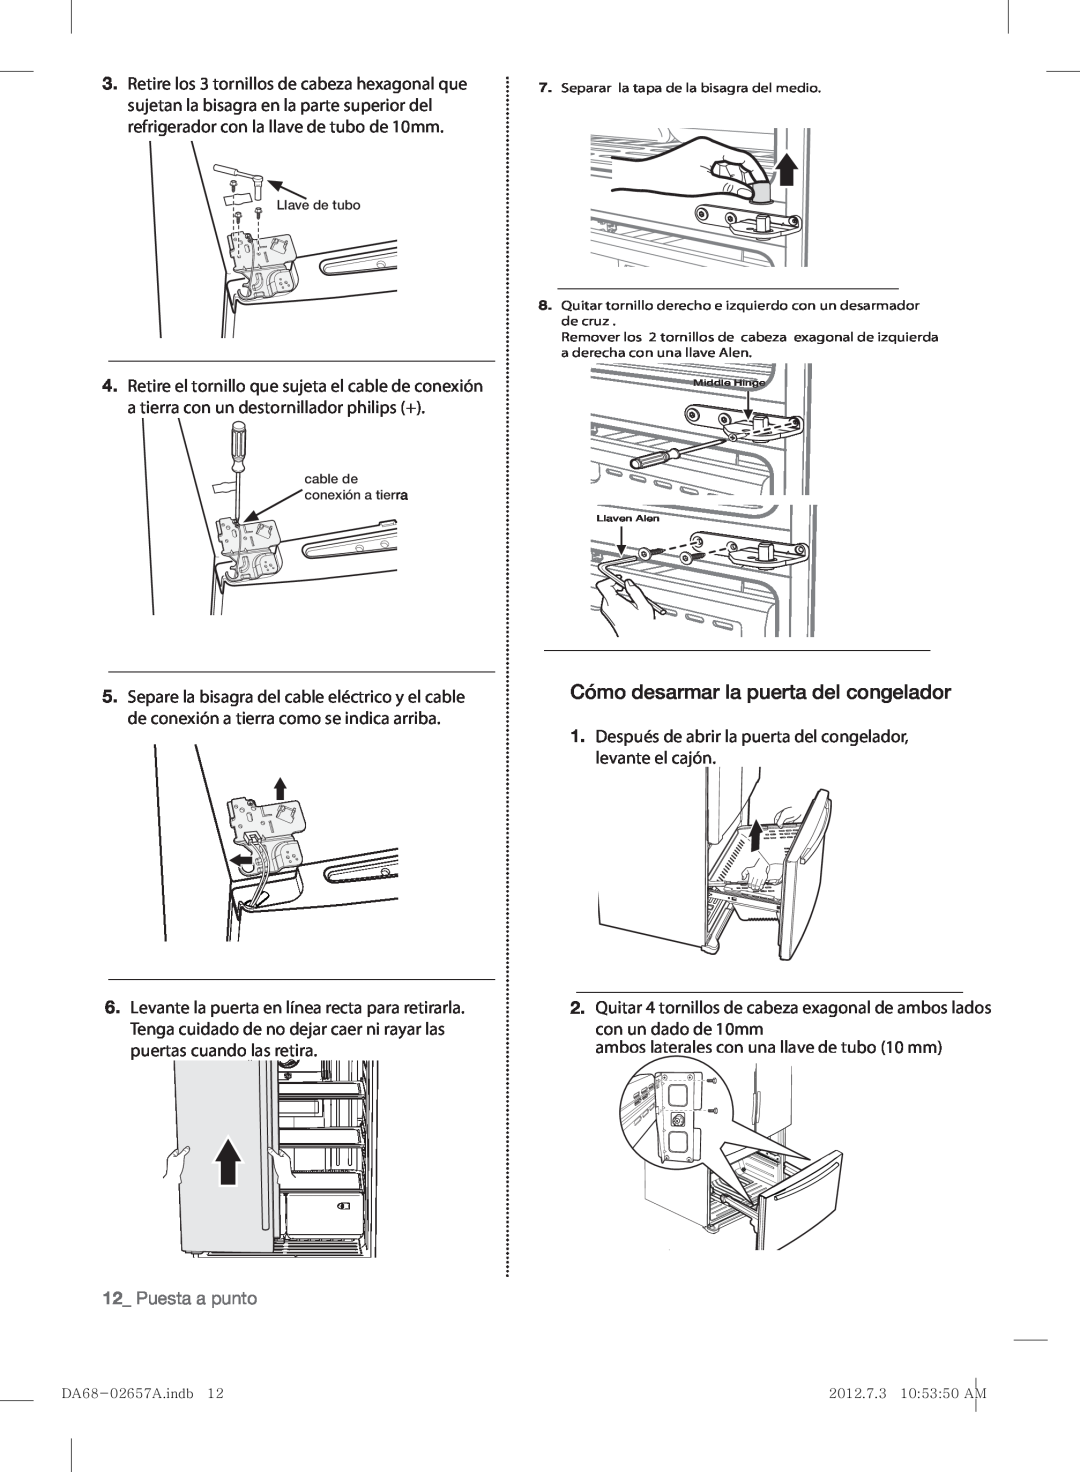 Samsung RF221NCTABC user manual Cómo desarmar la puerta del congelador, Puesta a punto 